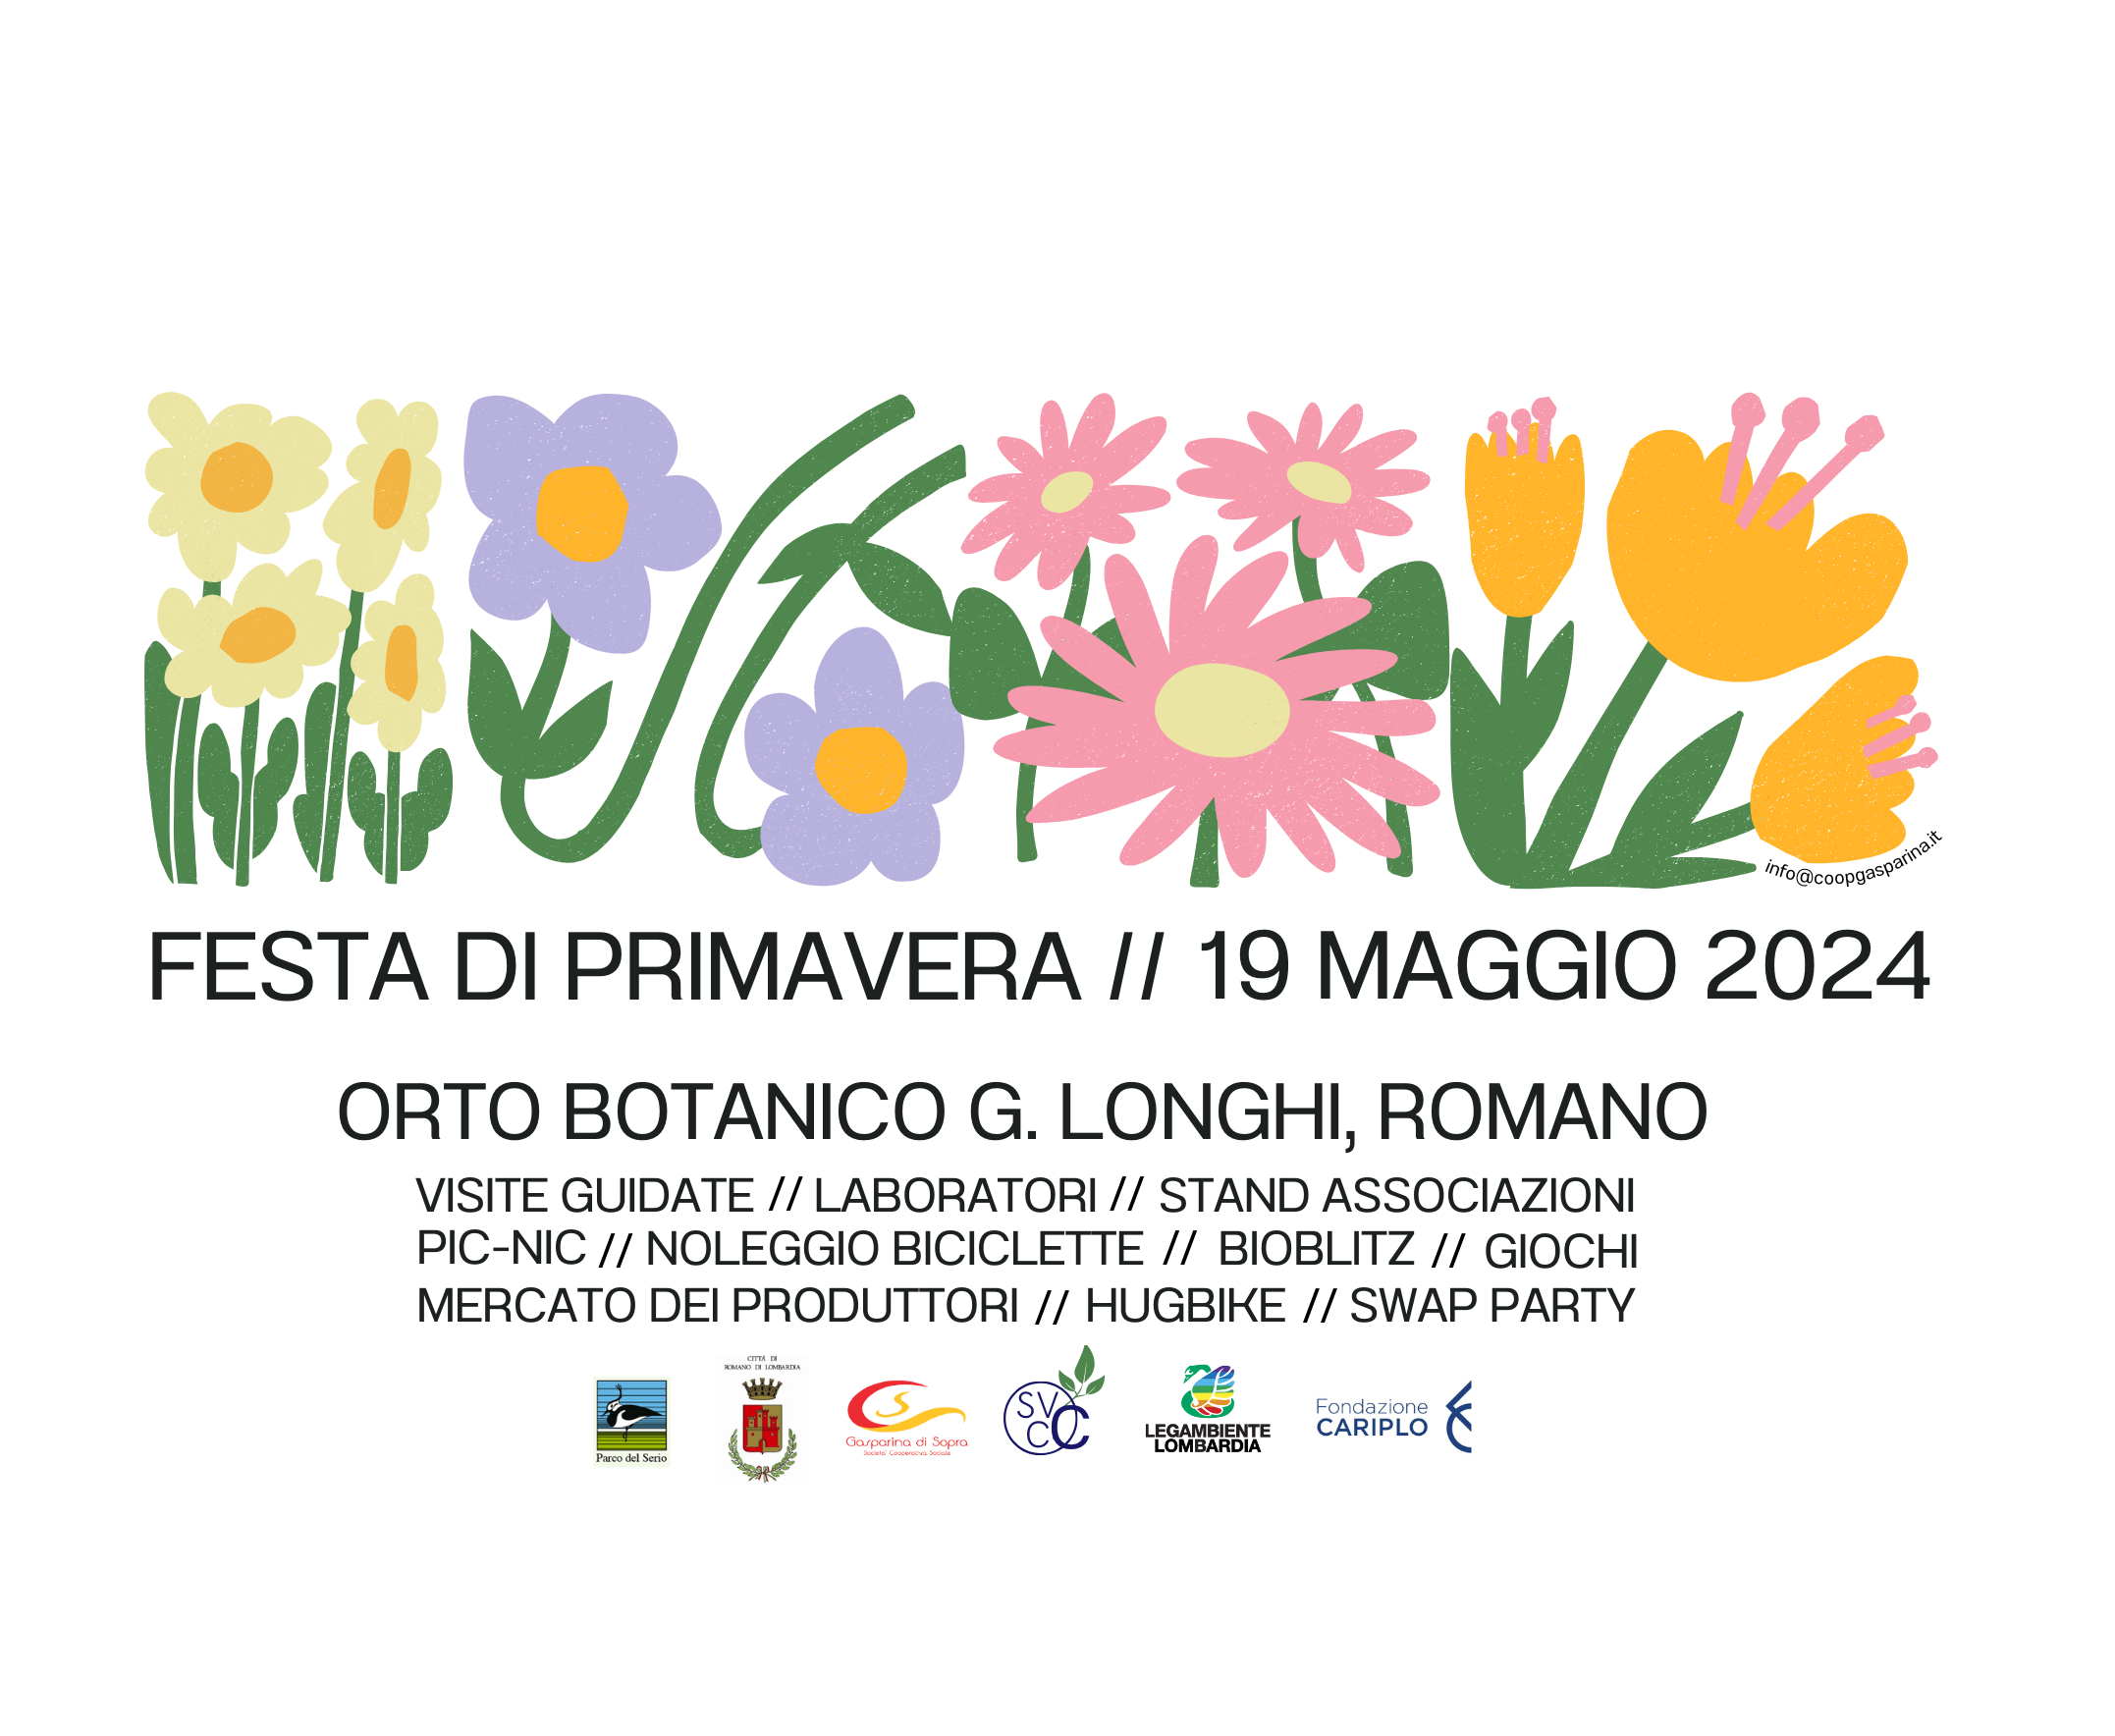 Domenica 19 maggio l'Orto Botanico di Romano si animerà con viste guidate, laboratori, noleggio biciclette, pic-nic, e tante attività all'insegna della sostenibilità.
